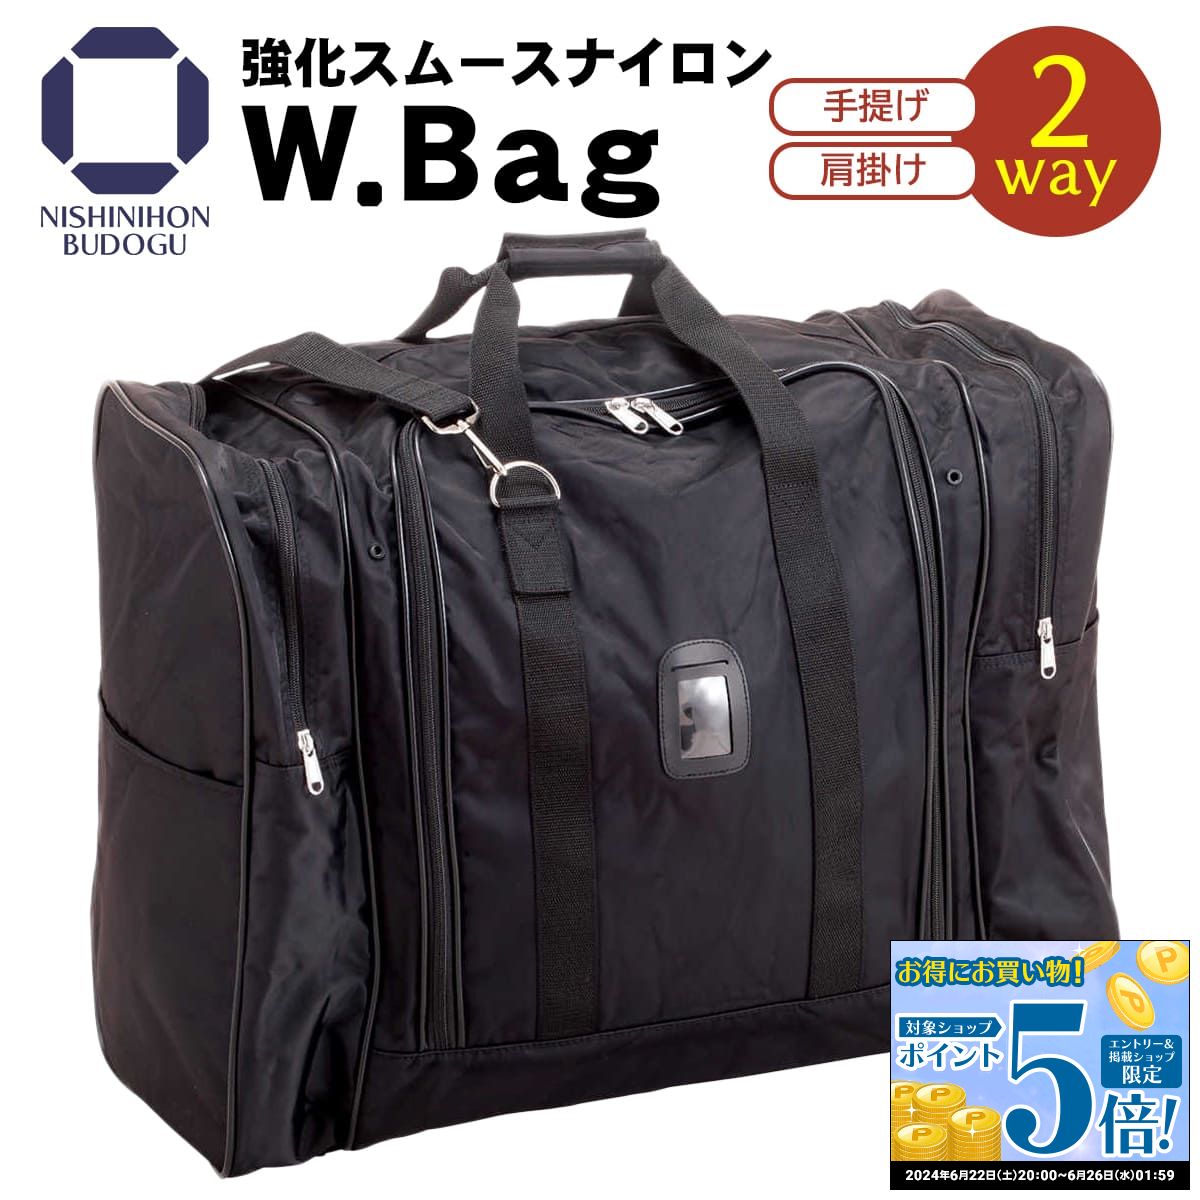 防具袋 W.Bag 防具バッグ 強化スムースナイロン・ショルダータイプ トラベルバッグ